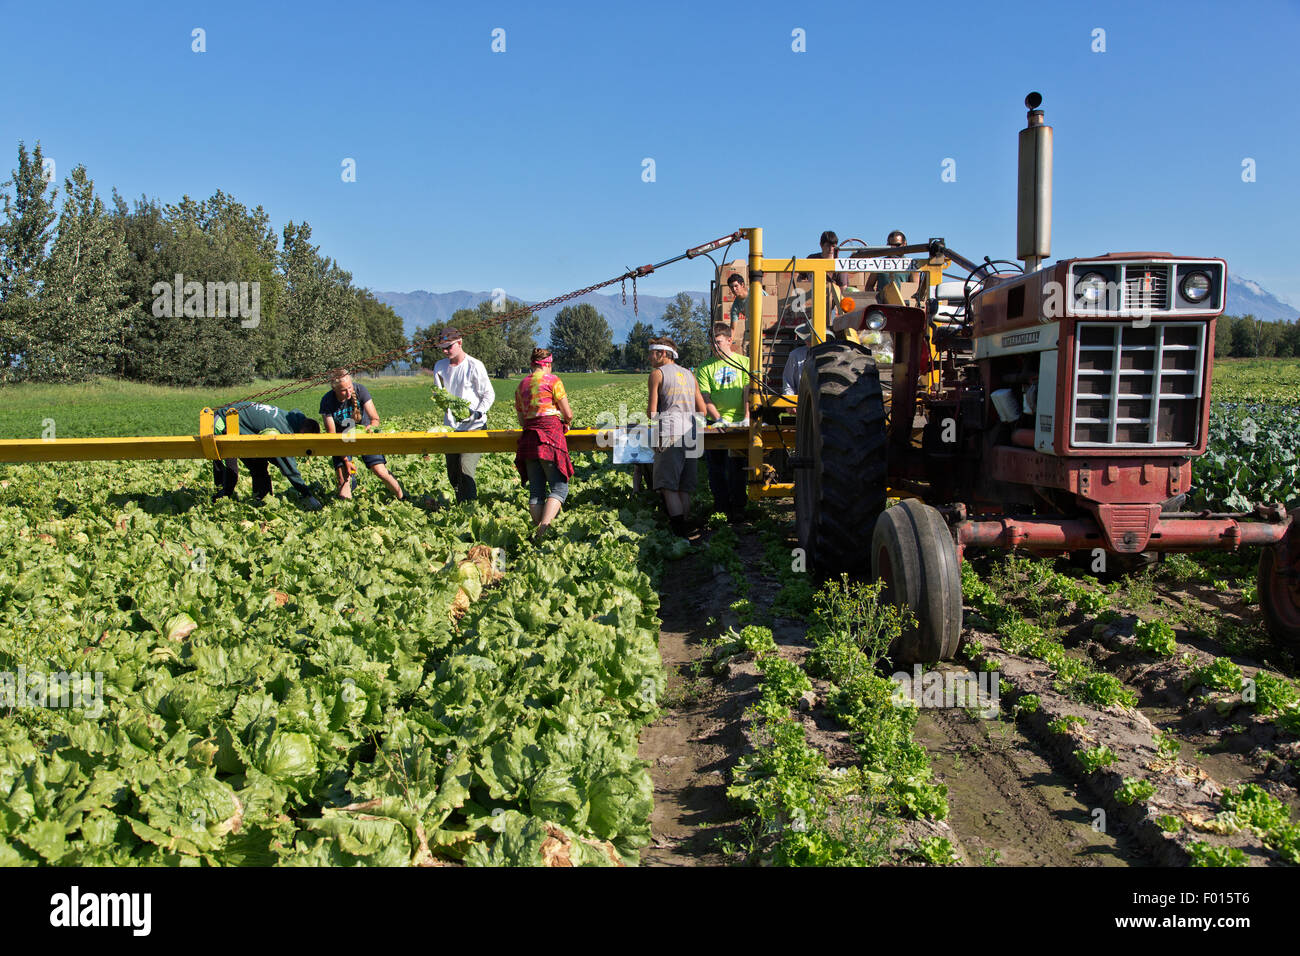 Farmer with crew harvesting 'Iceberg' lettuce in field rows. Stock Photo